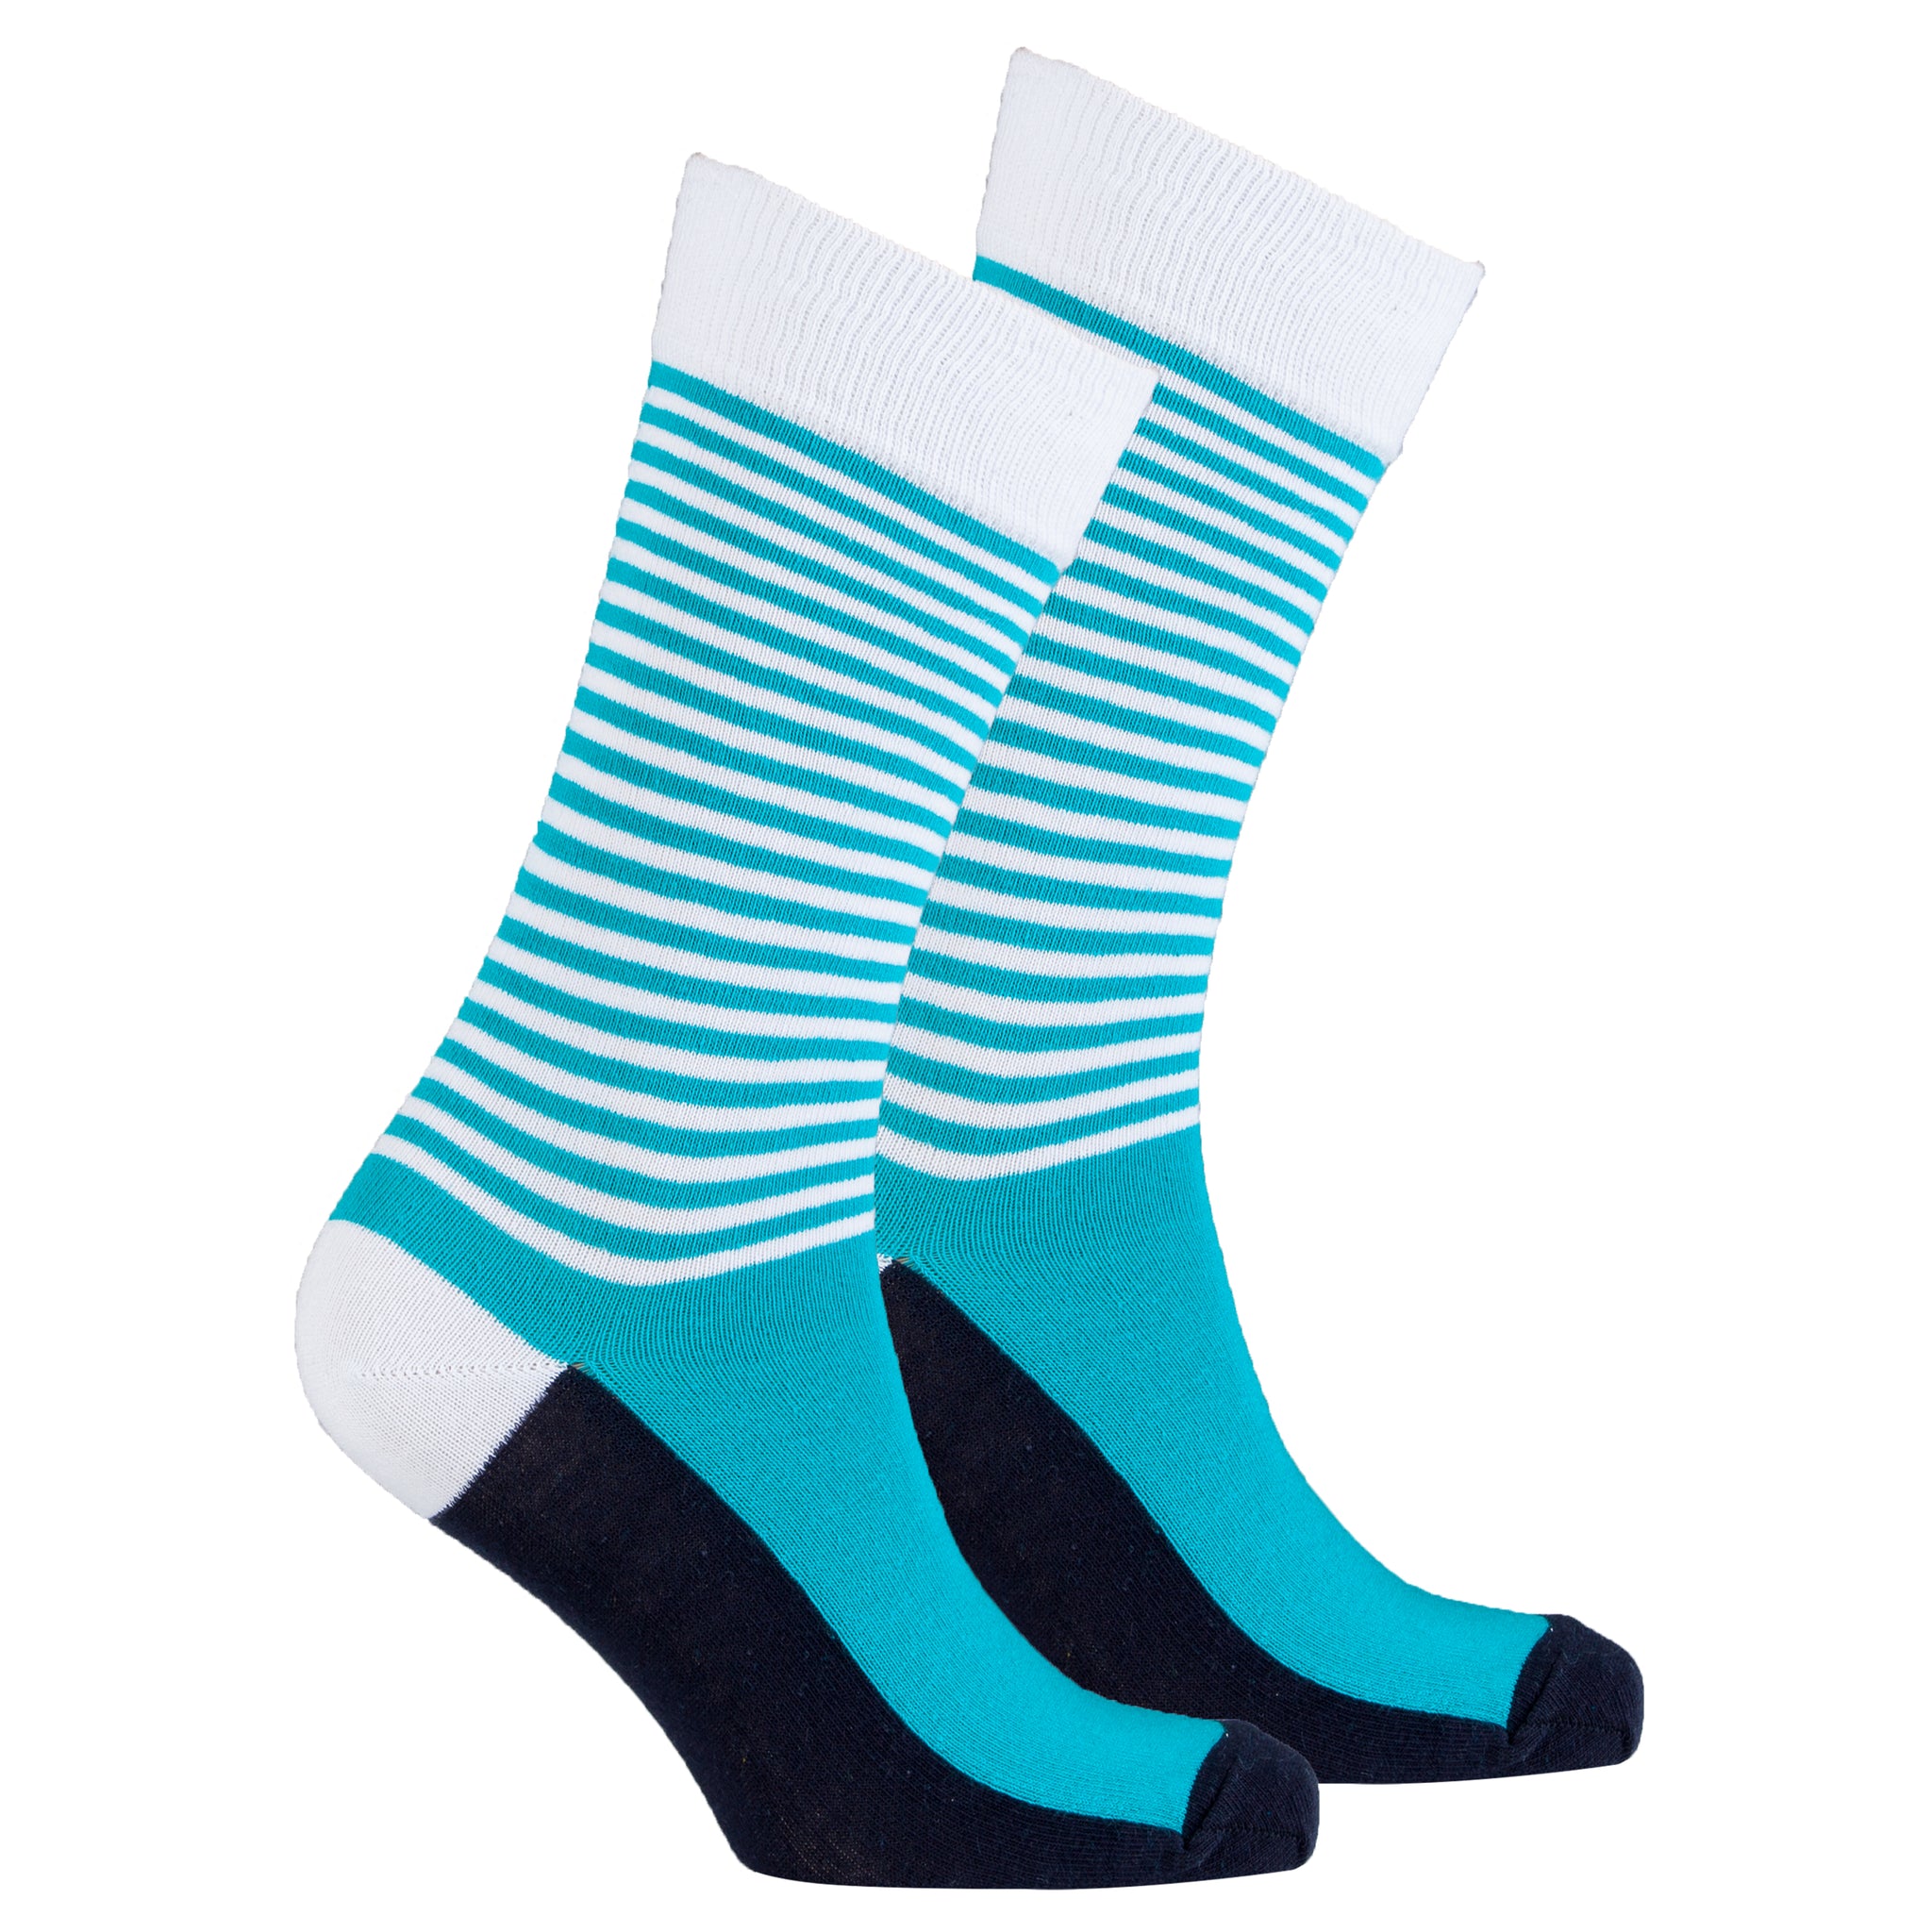 Men's Teal & Black Stripe Socks